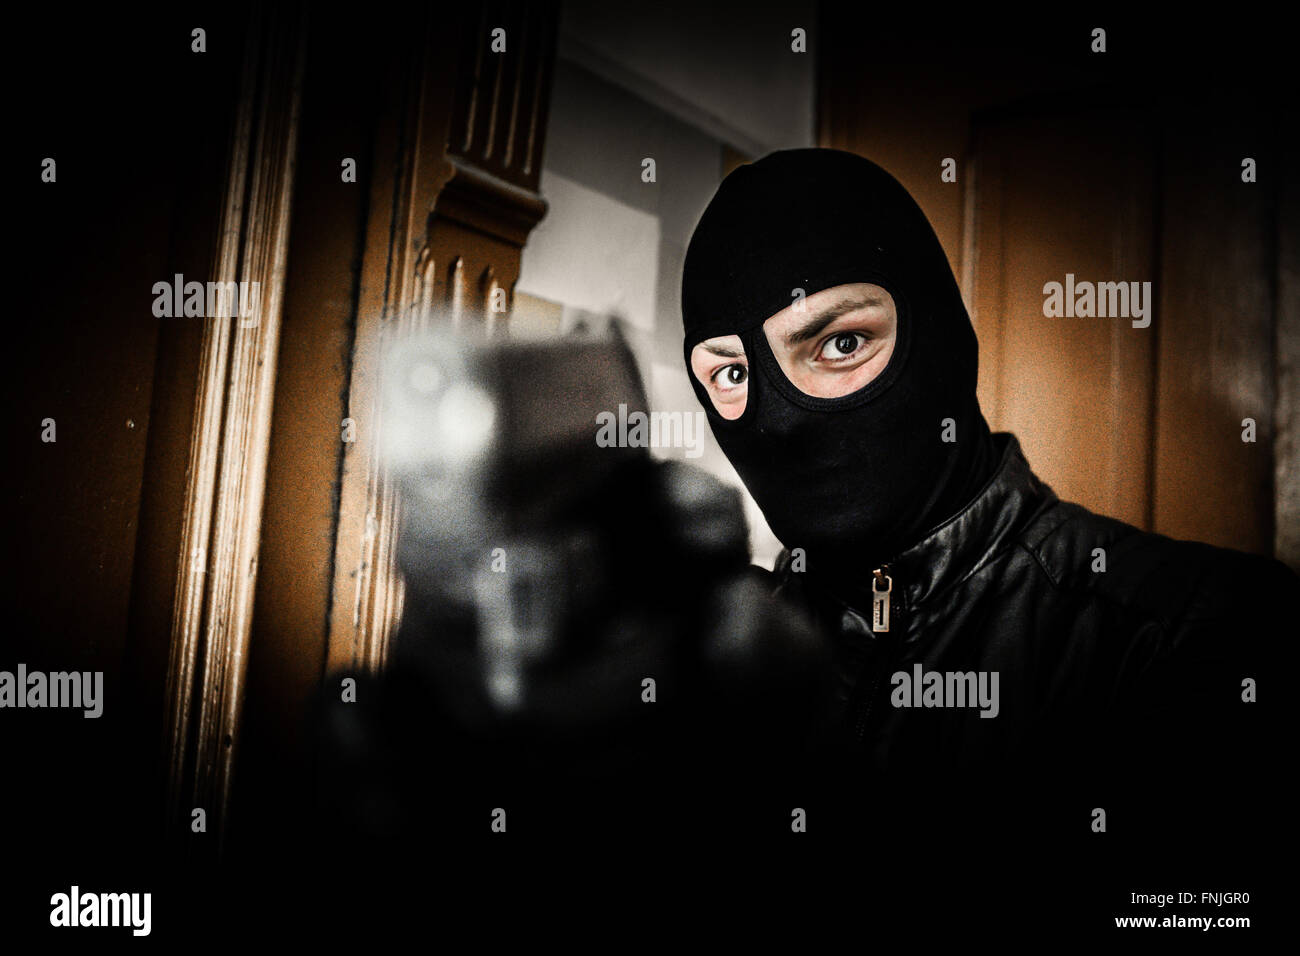 Un uomo con pistole, Germania, Berlino, 20. Maggio 2015. Foto: picture alliance/Robert Schlesinger Foto Stock